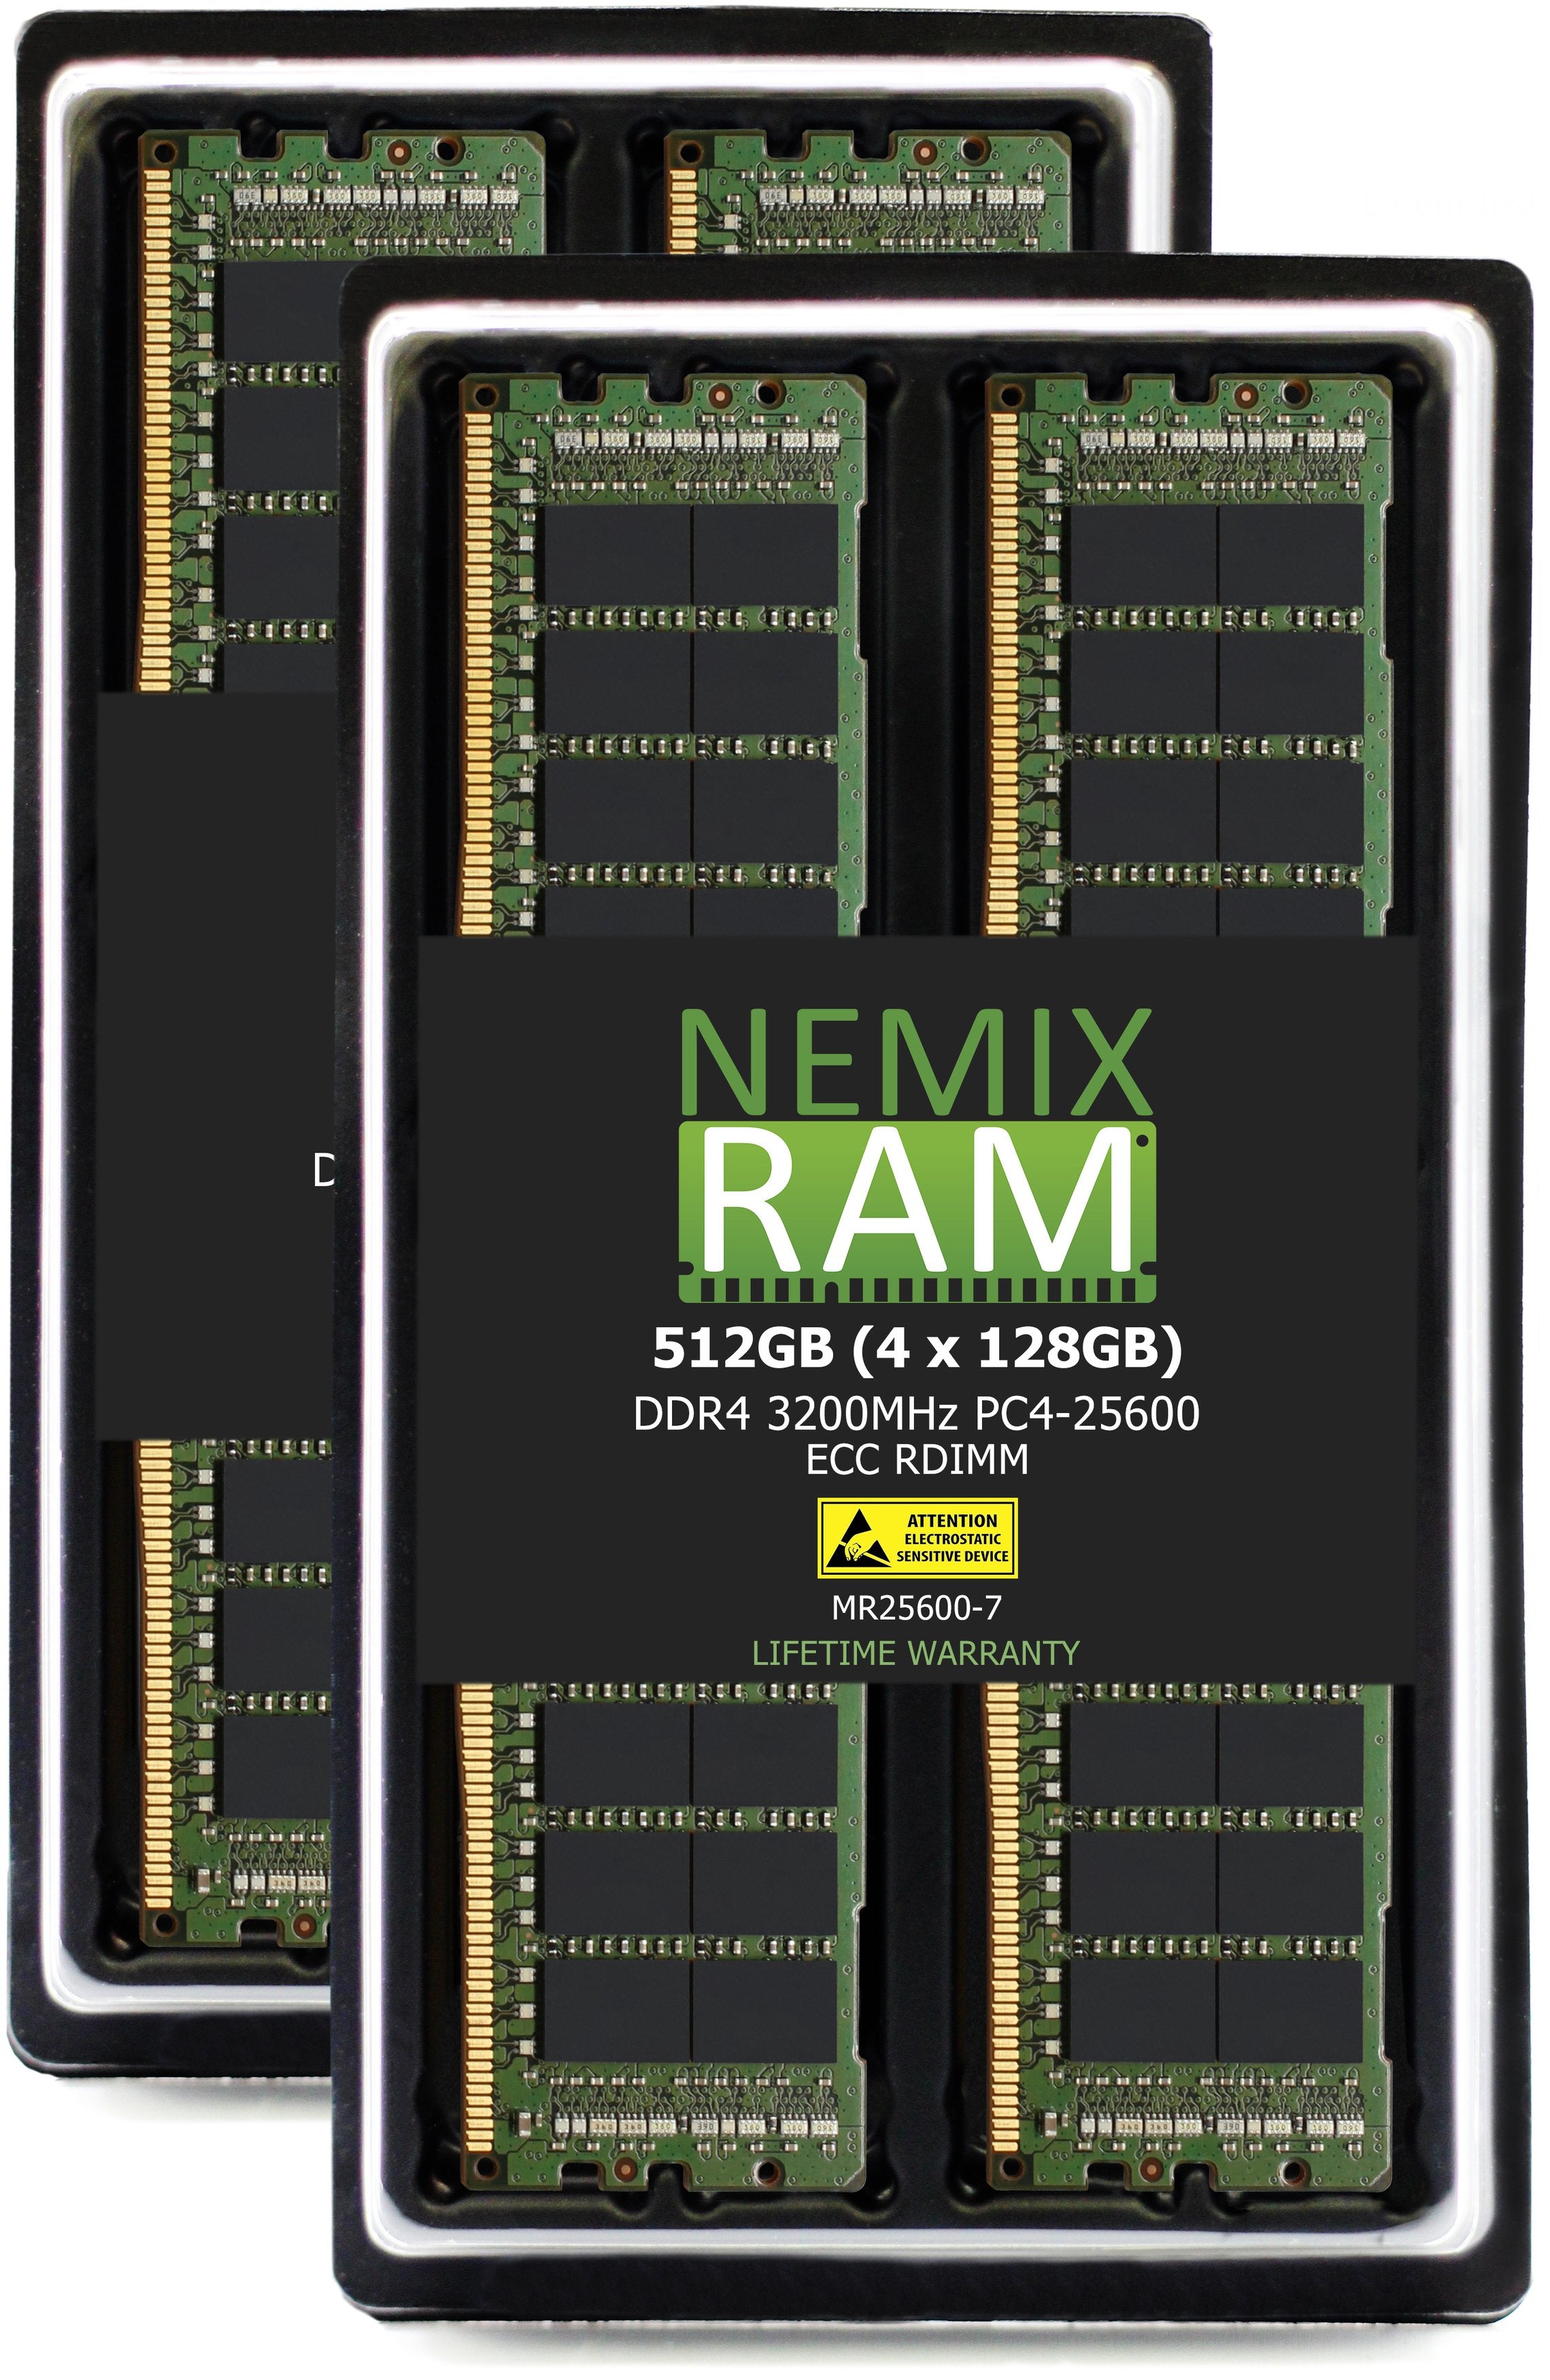 DELL PowerEdge EMC XE8545 Server Memory Upgrade